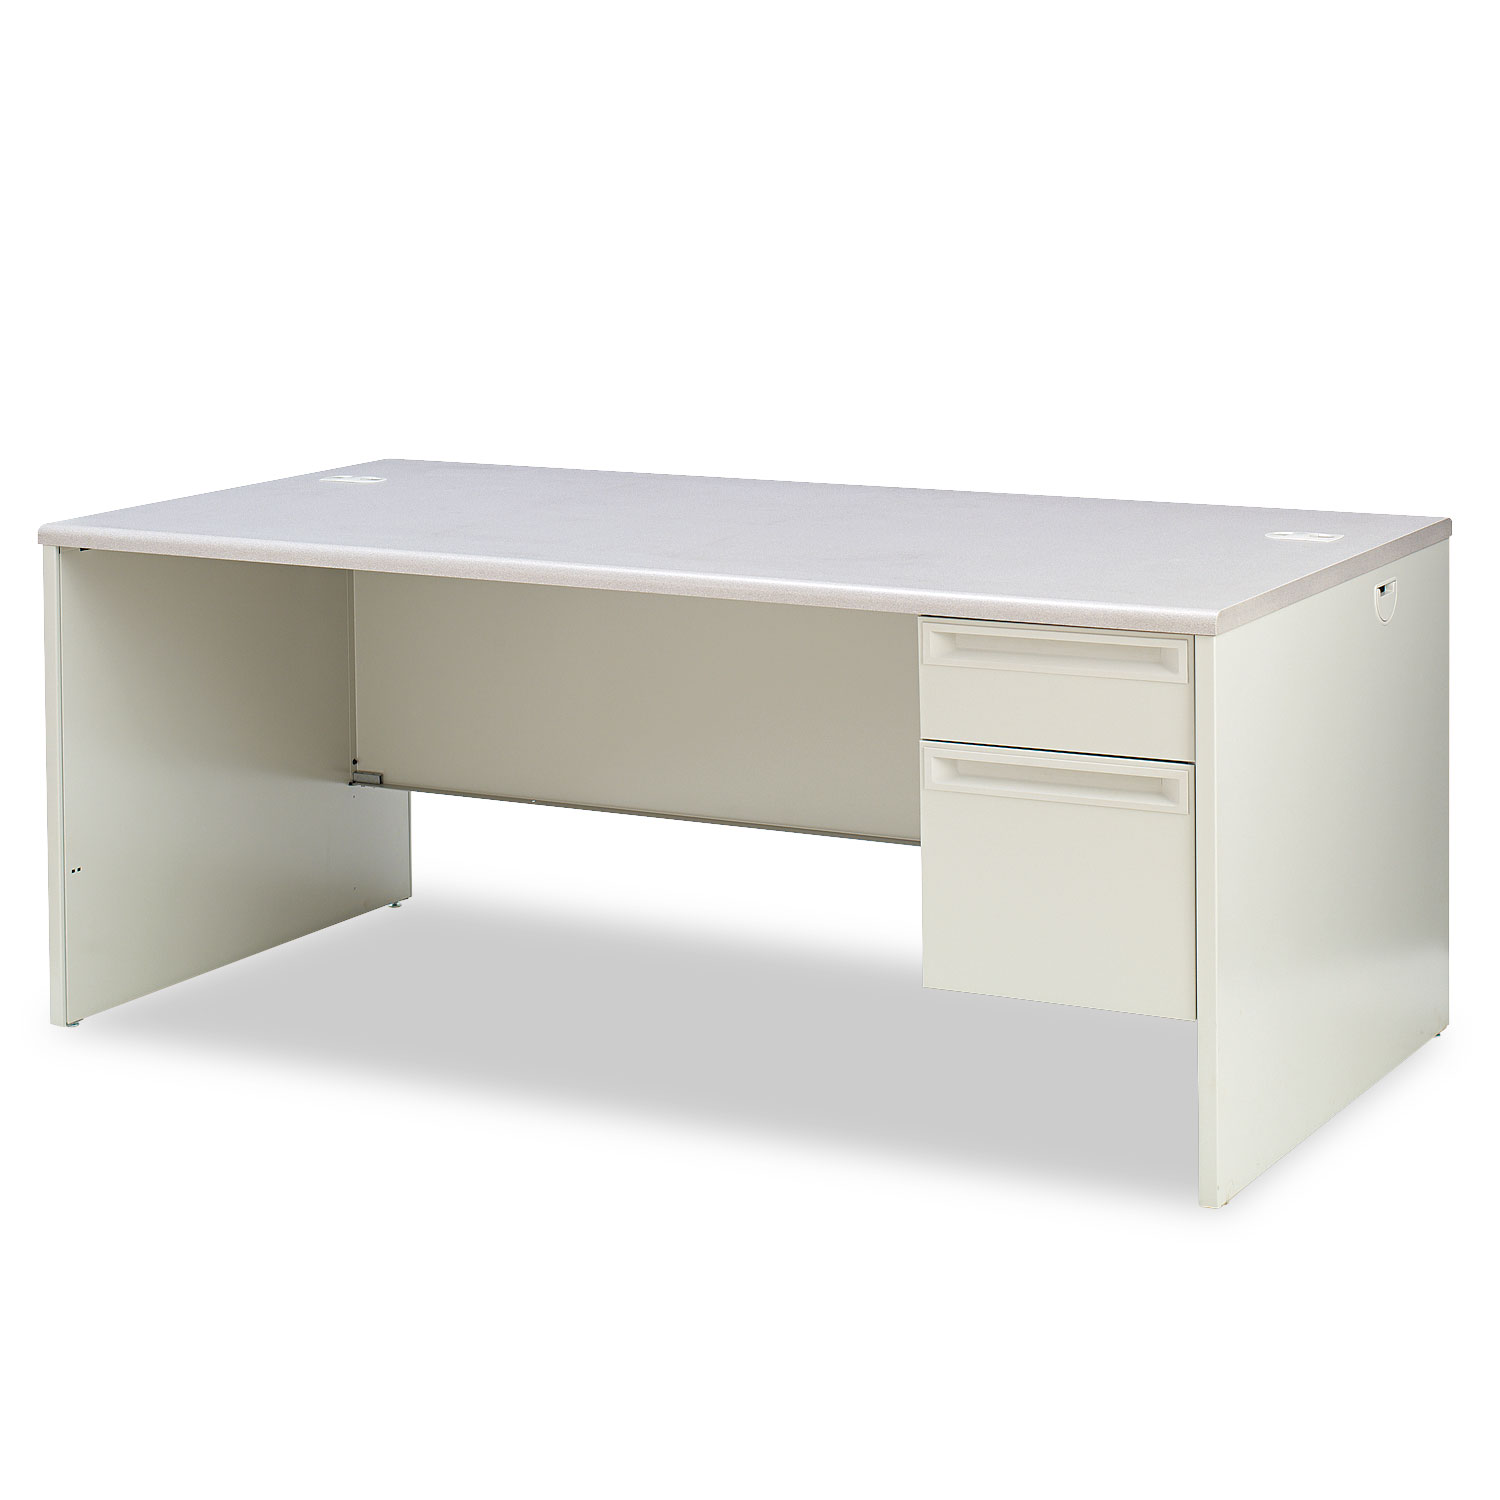  HON H38293R.G2.Q 38000 Series Right Pedestal Desk, 72w x 36d x 29.5h, Light Gray (HON38293RG2Q) 